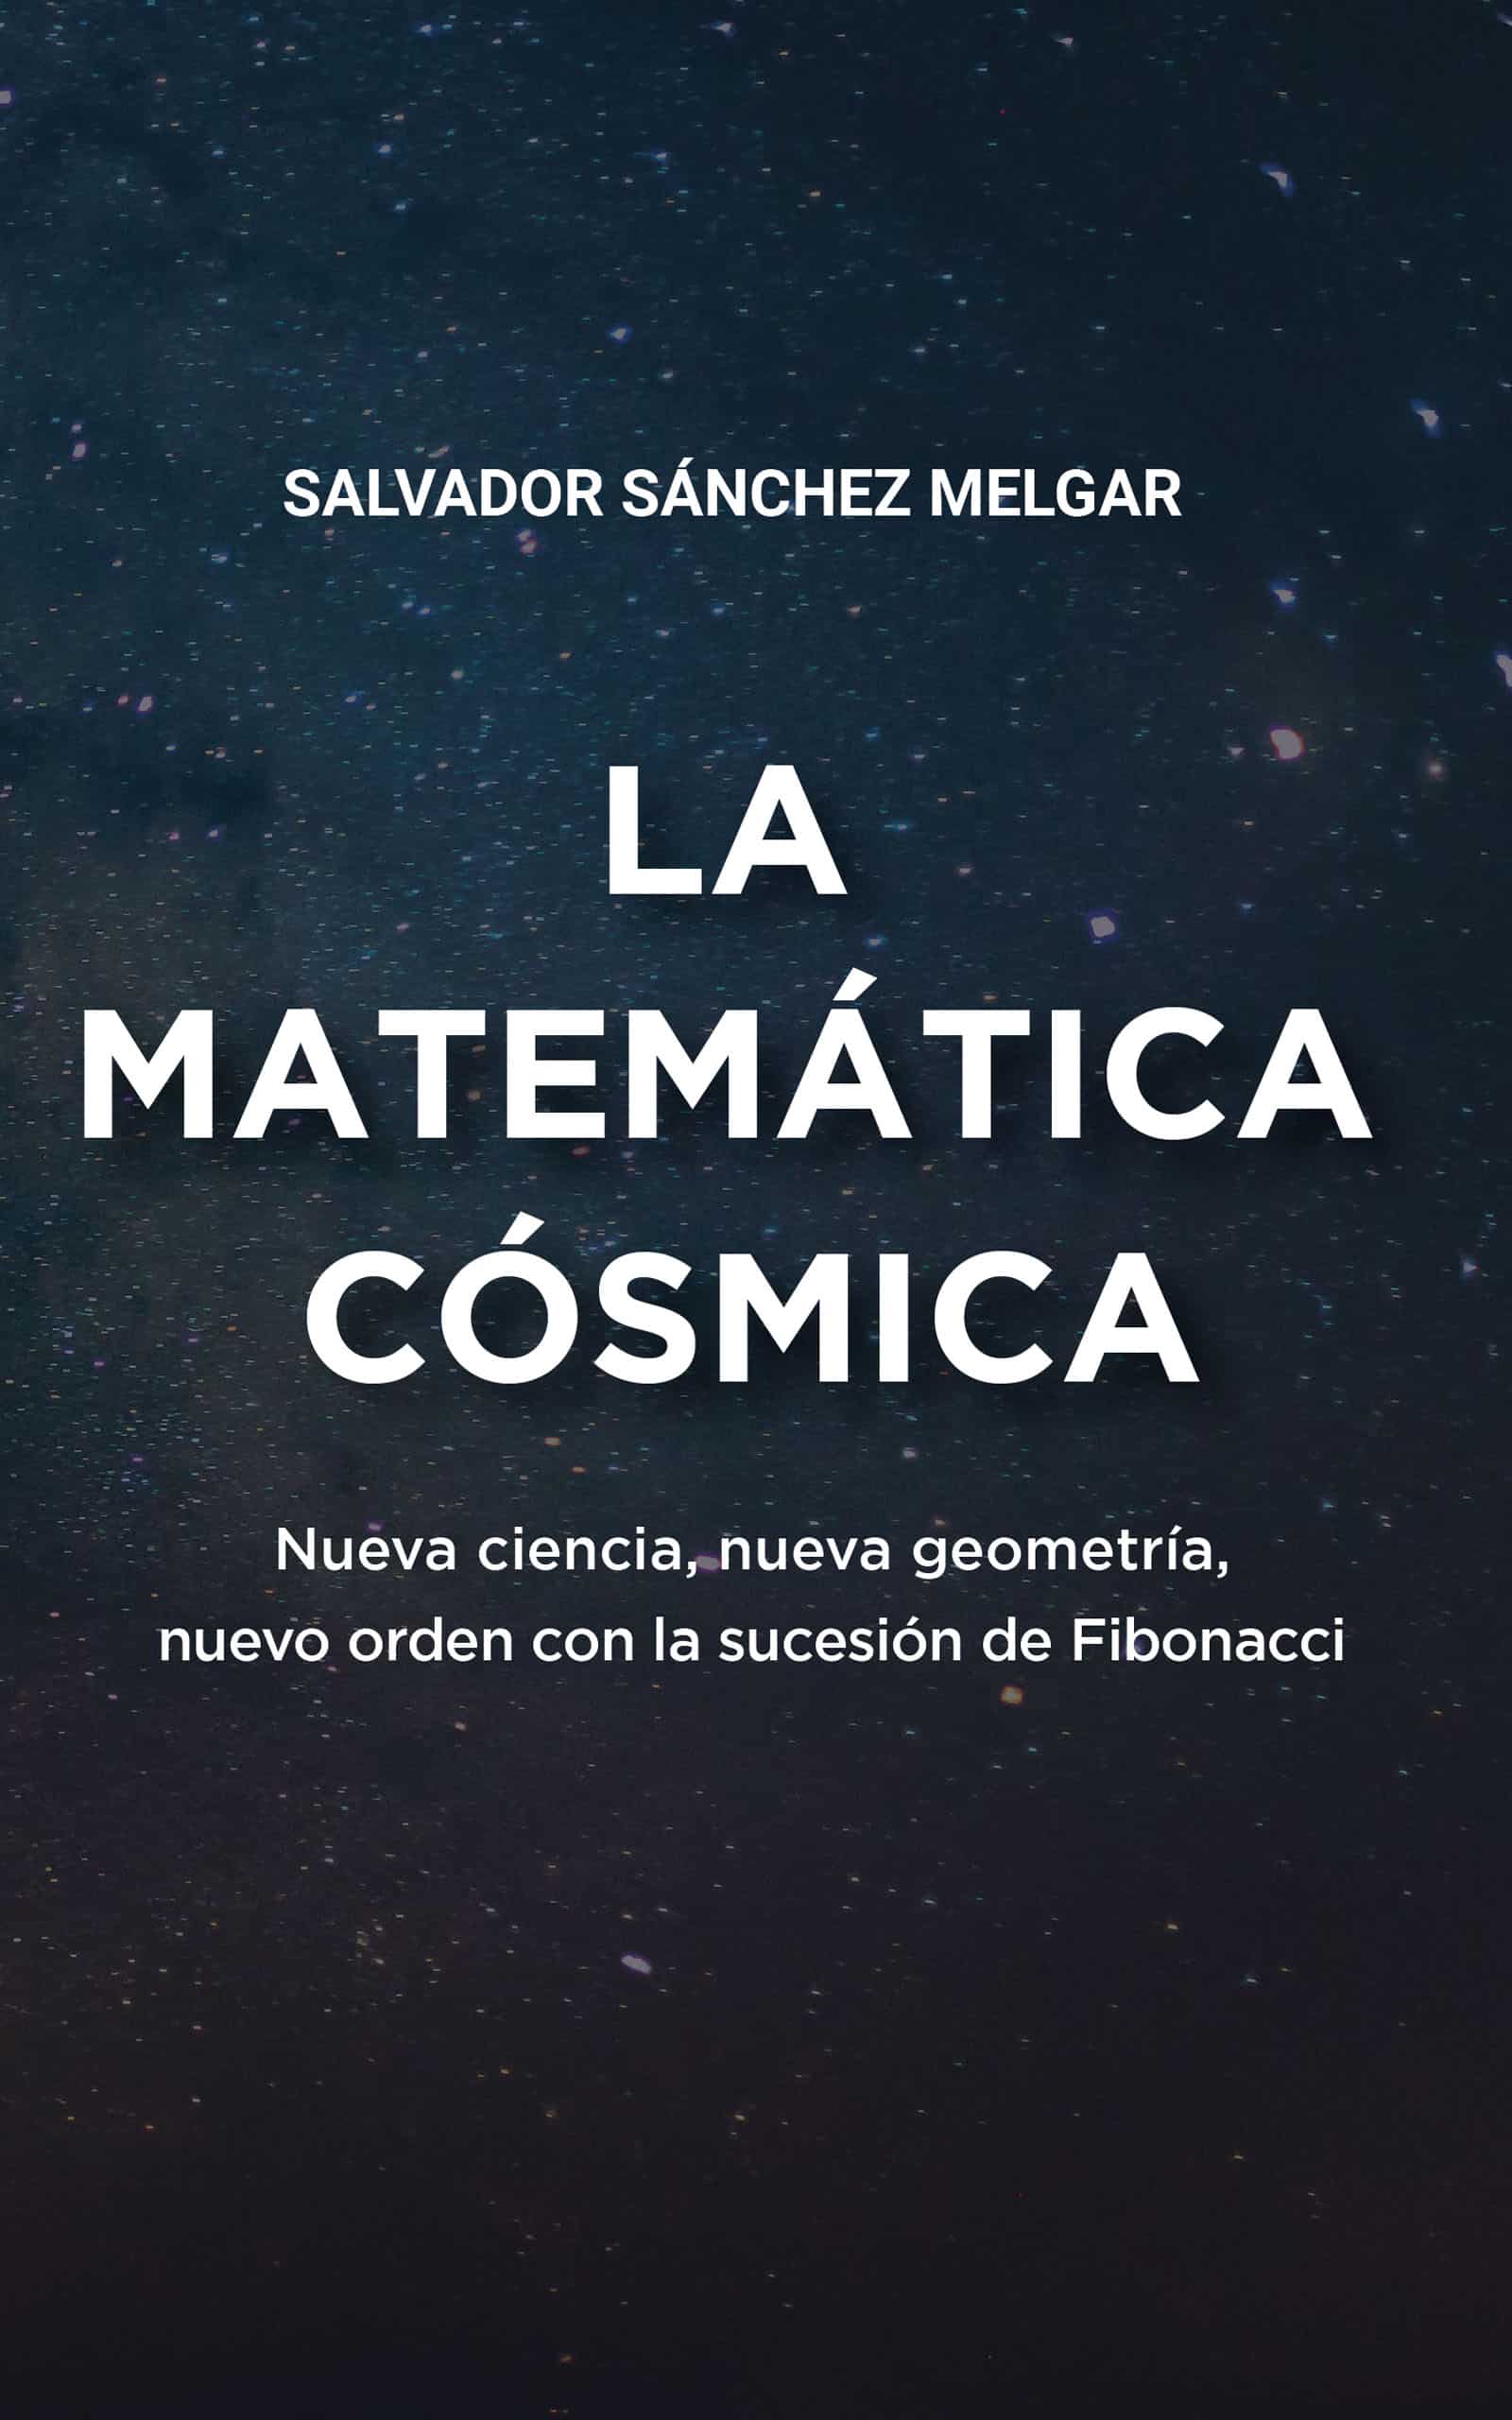 La matemática cósmica, de Salvador Sánchez Melgar